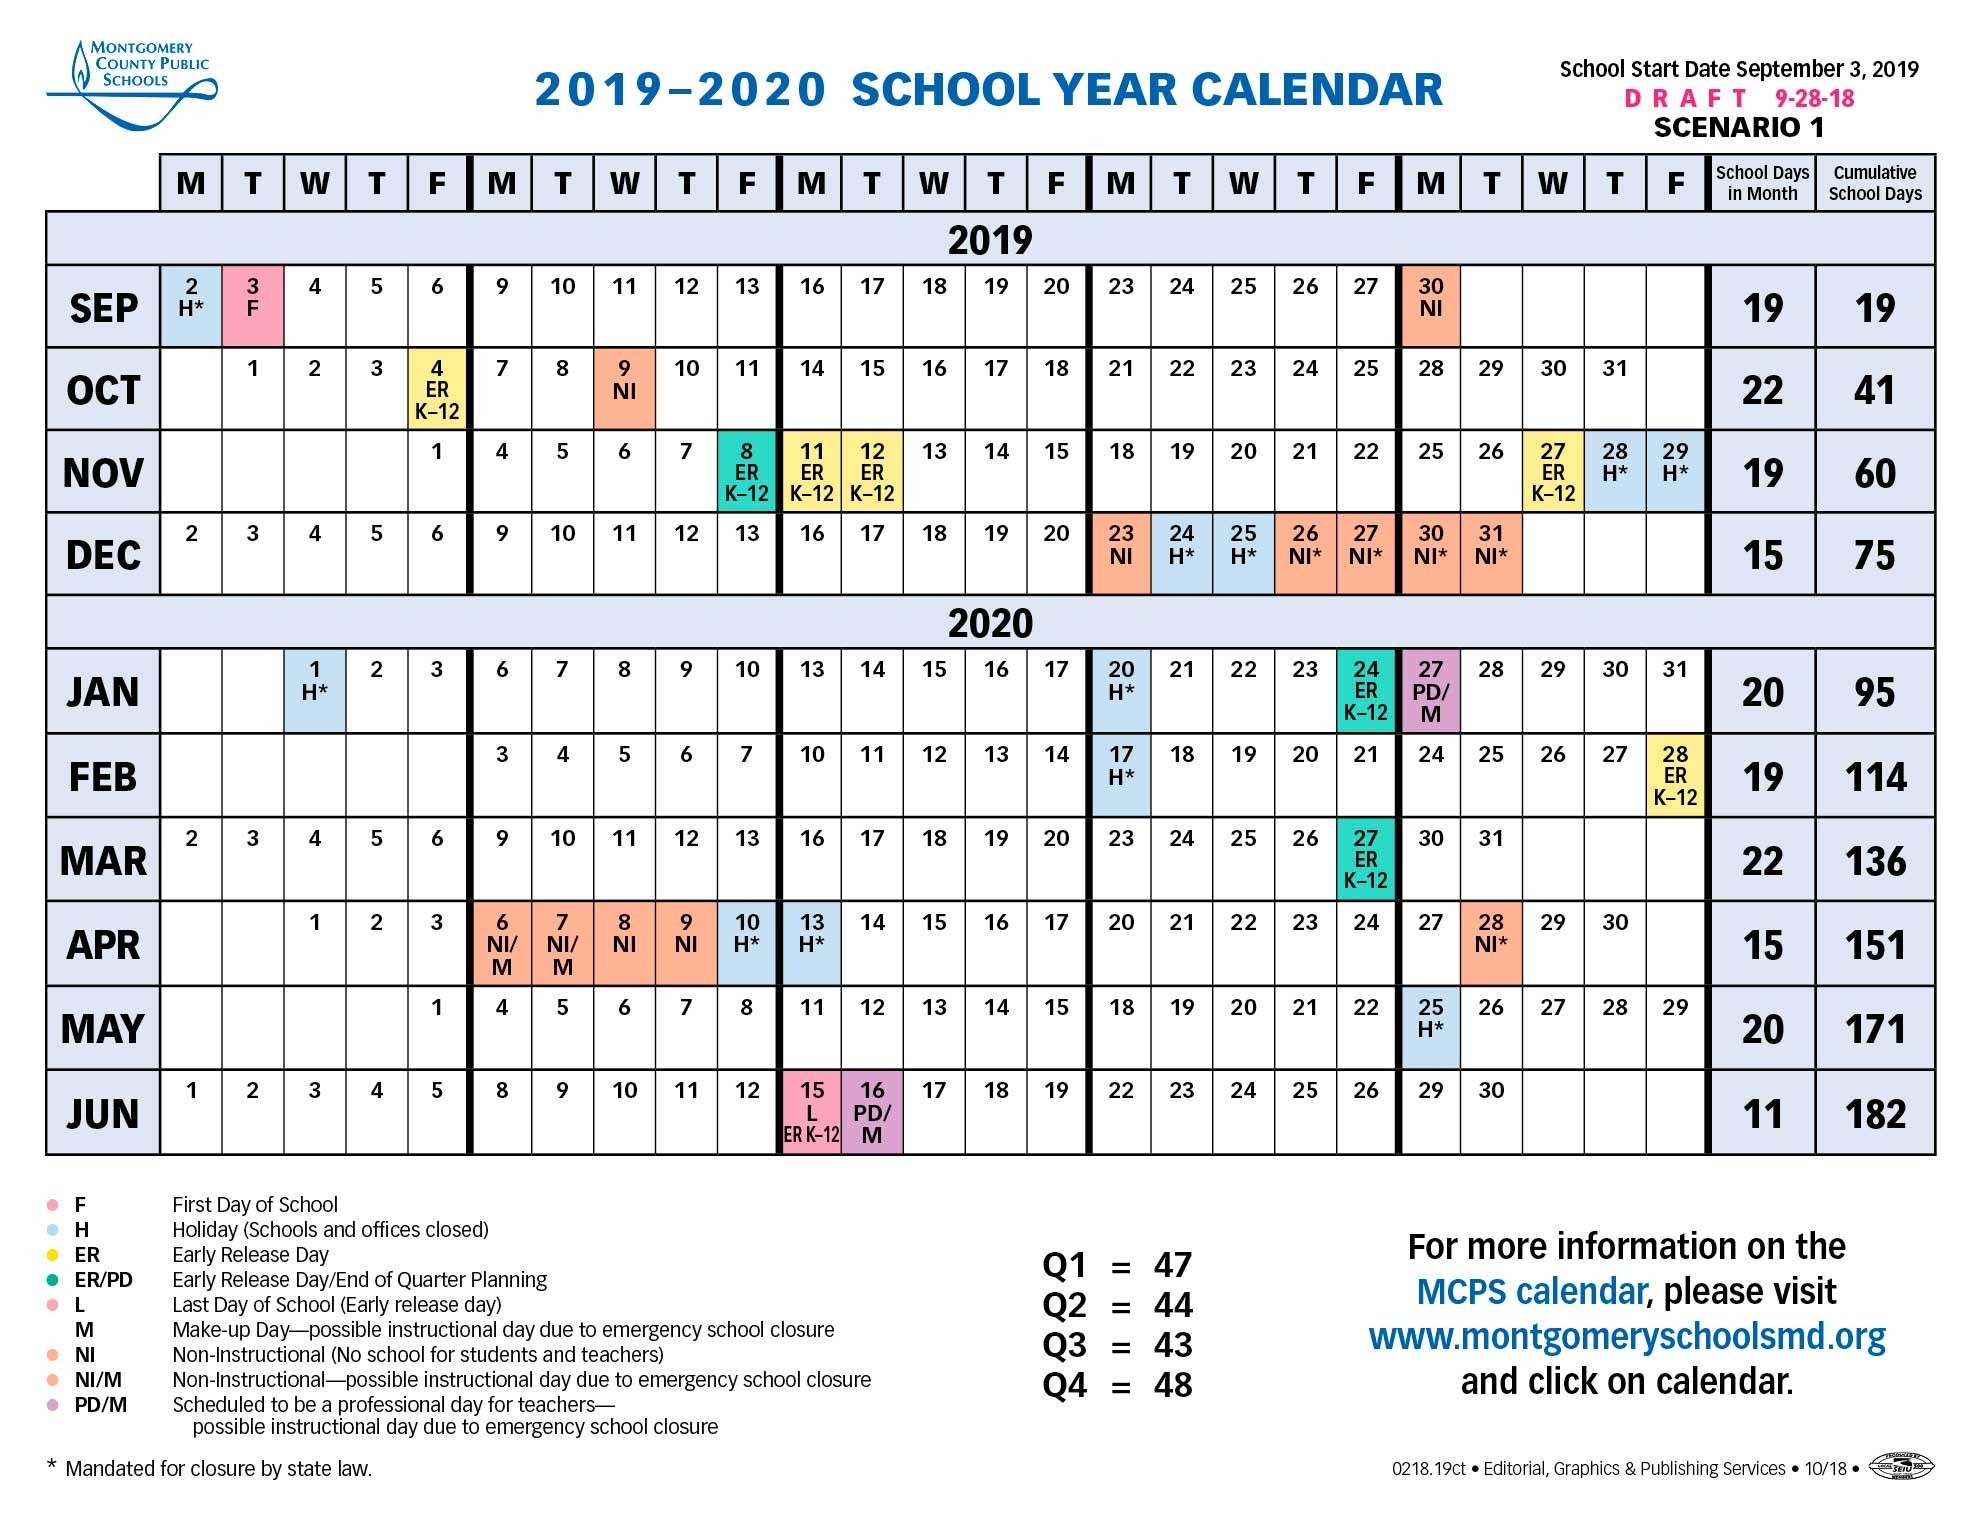 School Board Approves Longer Spring Break For 2019-2020-Jewish Holidays October 2020